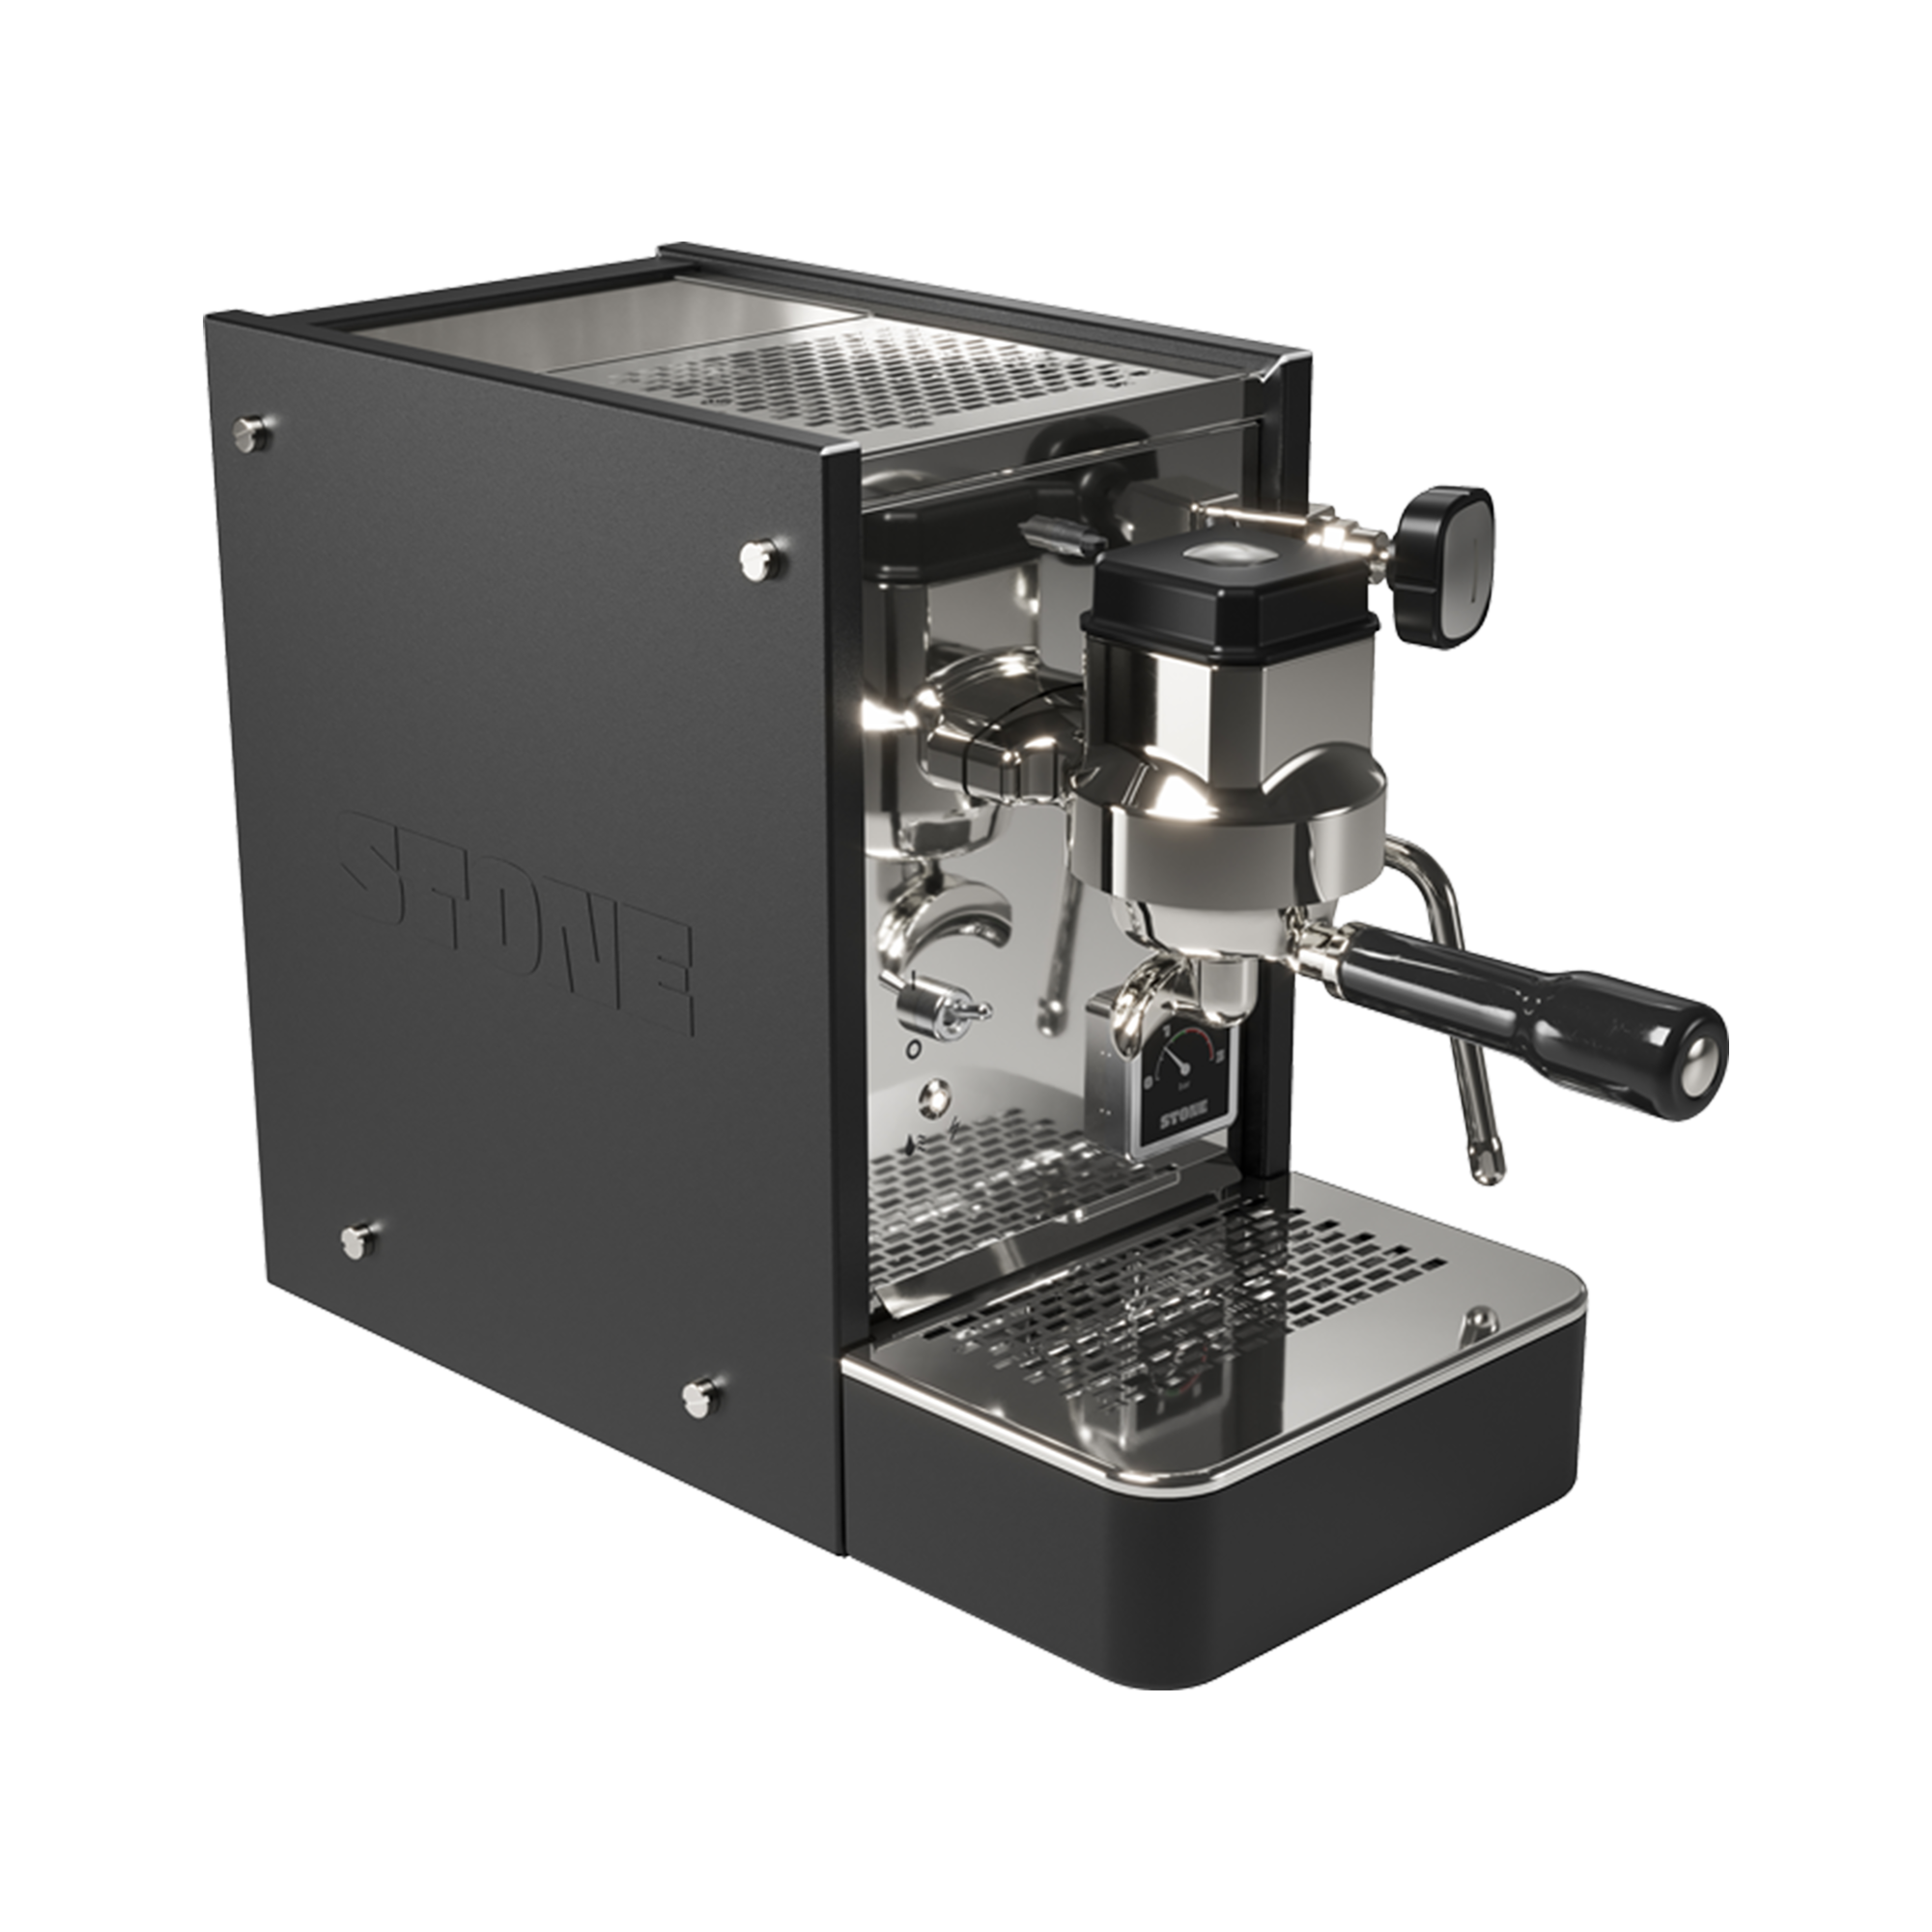 Stone Lite Espresso Machine - Black